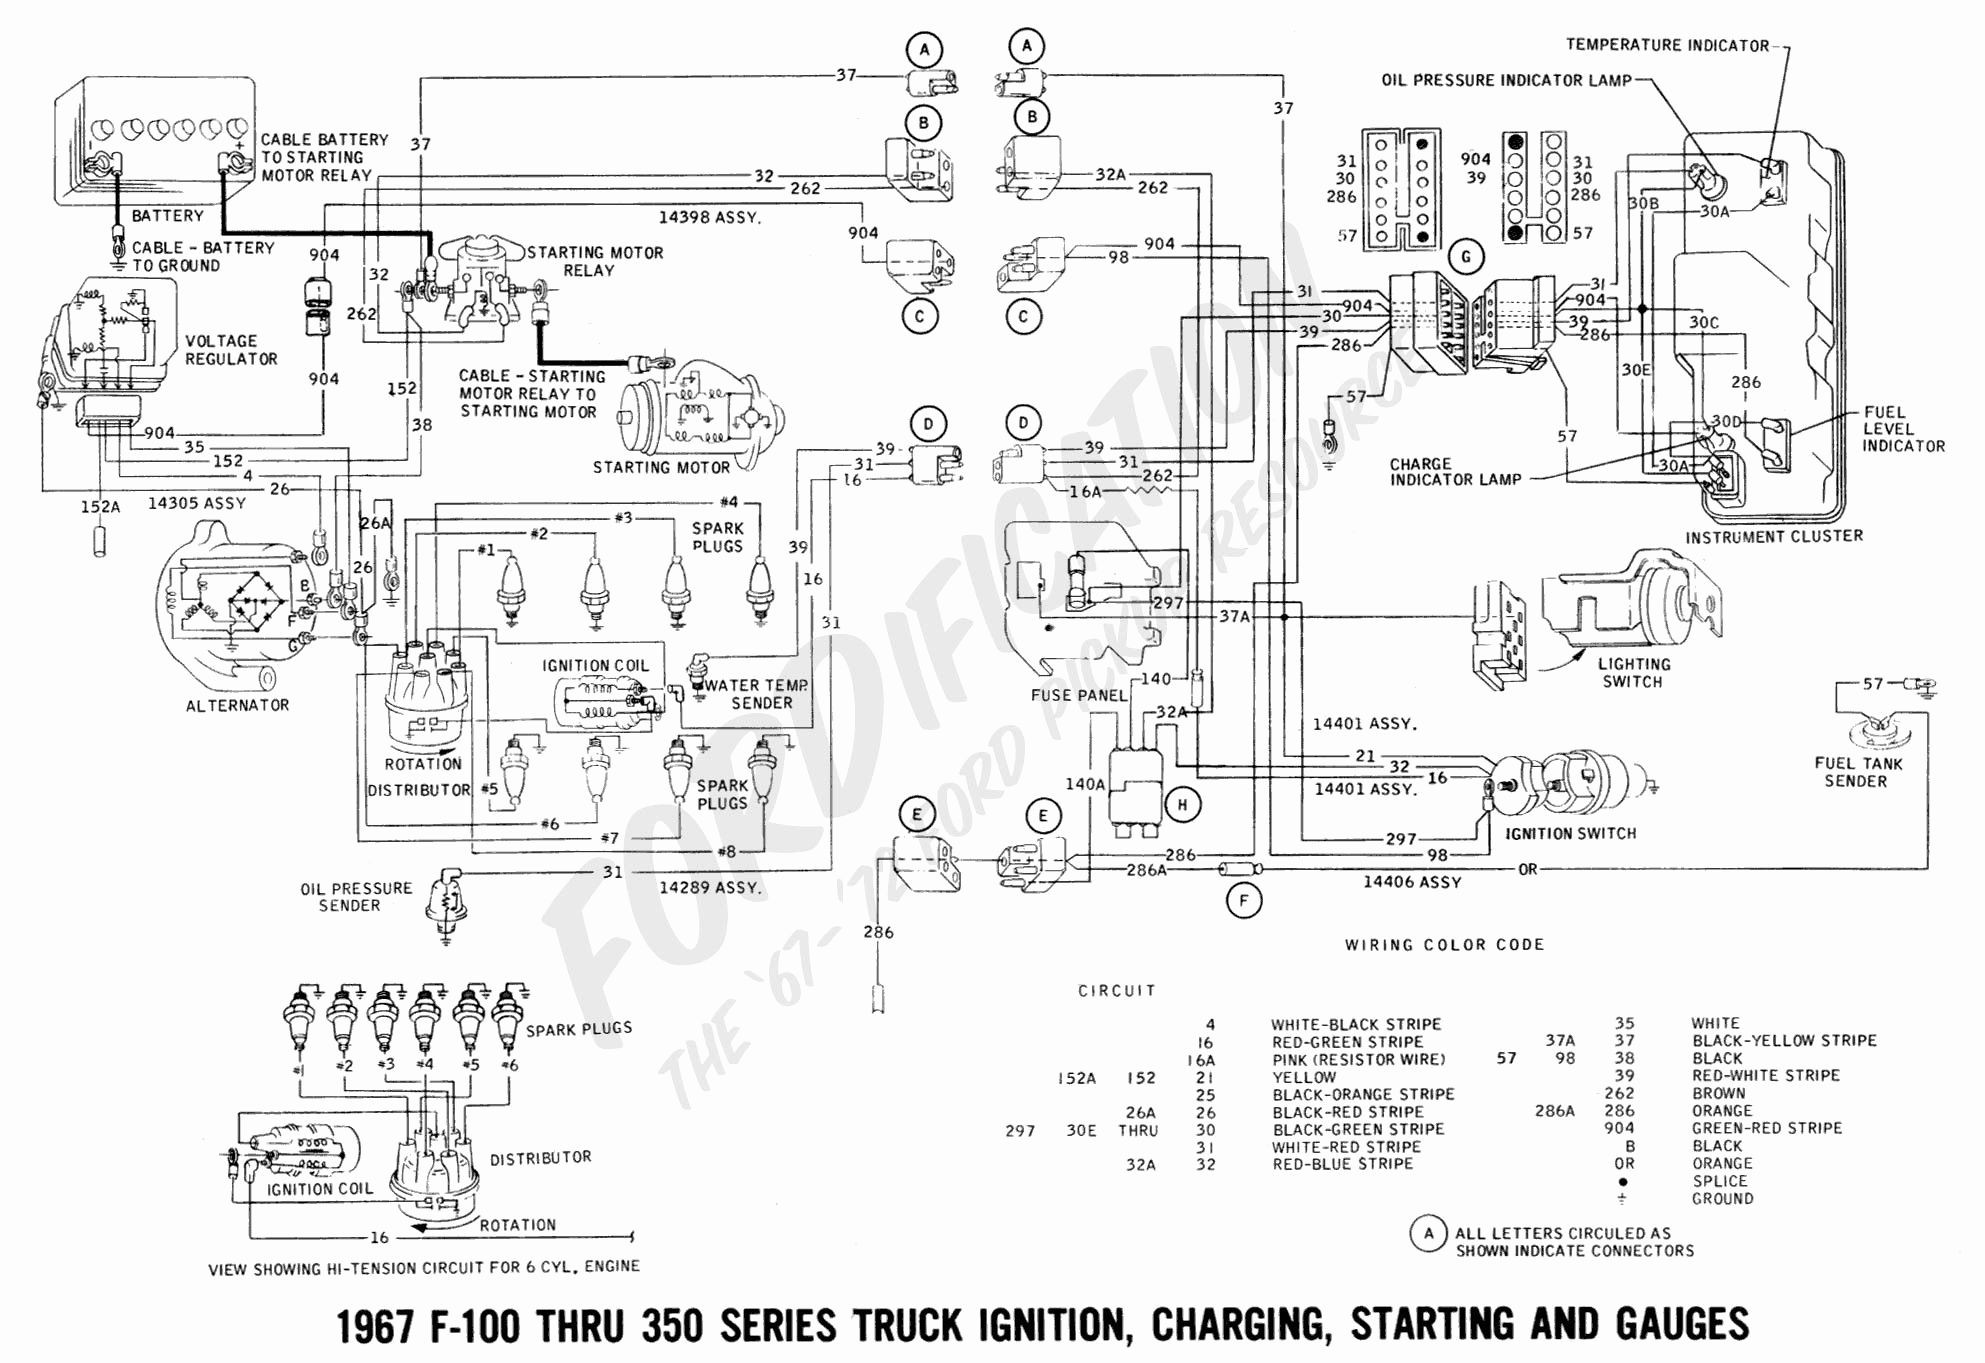 Ford F700 Brake System Diagram 1976 ford F700 Dash Wiring Wiring Diagram Data today Of Ford F700 Brake System Diagram